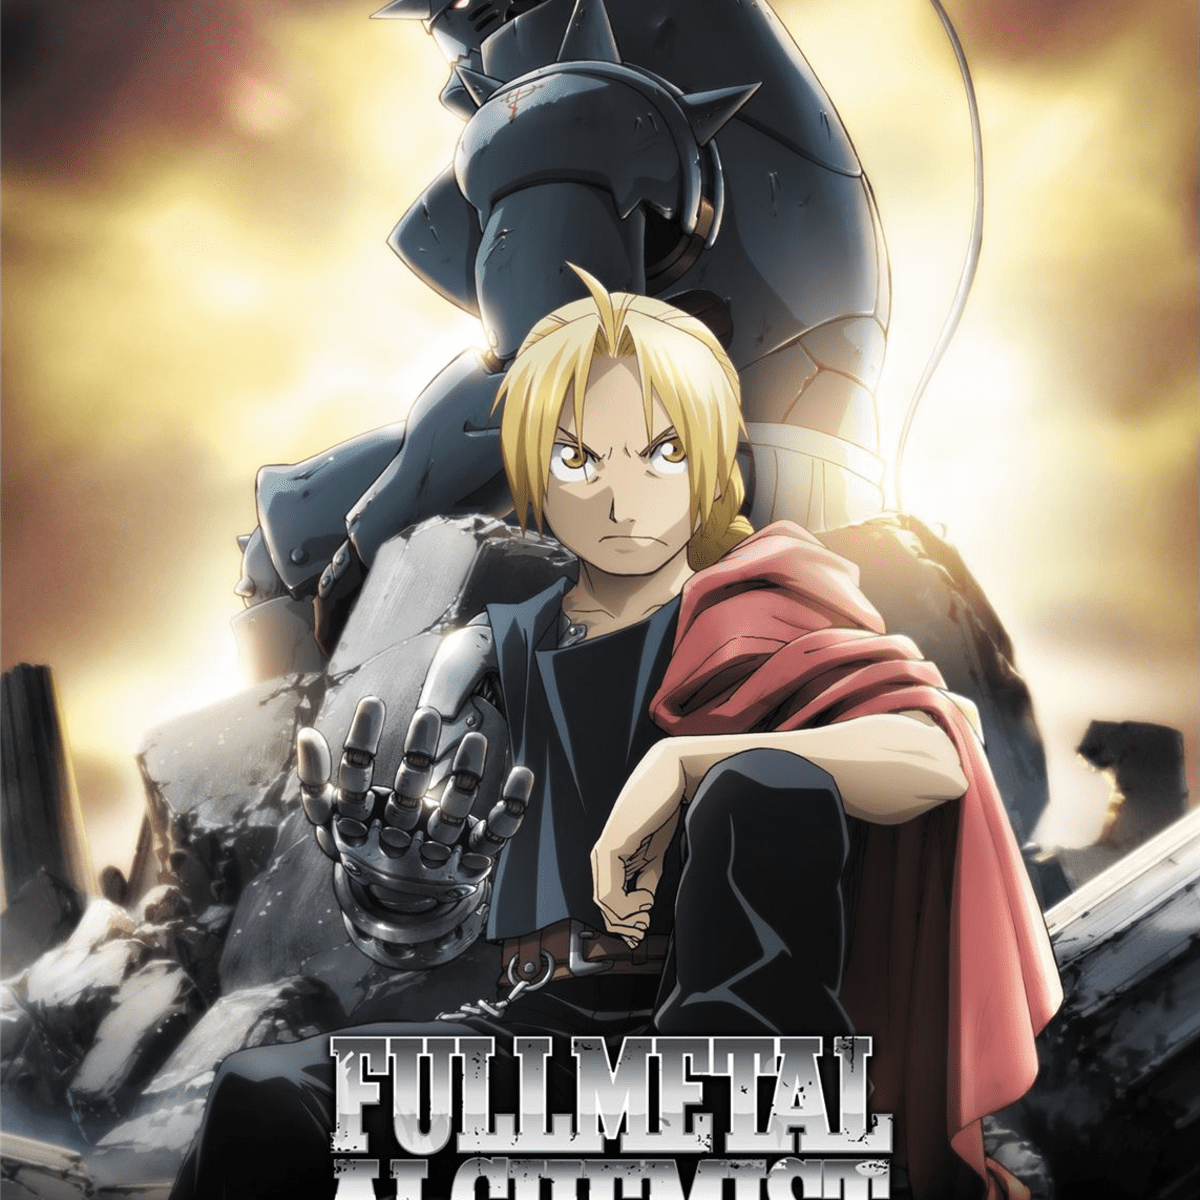 Fullmetal Alchemist the Movie: Conqueror of Shamballa｜CATCHPLAY+ Watch Full  Movie & Episodes Online